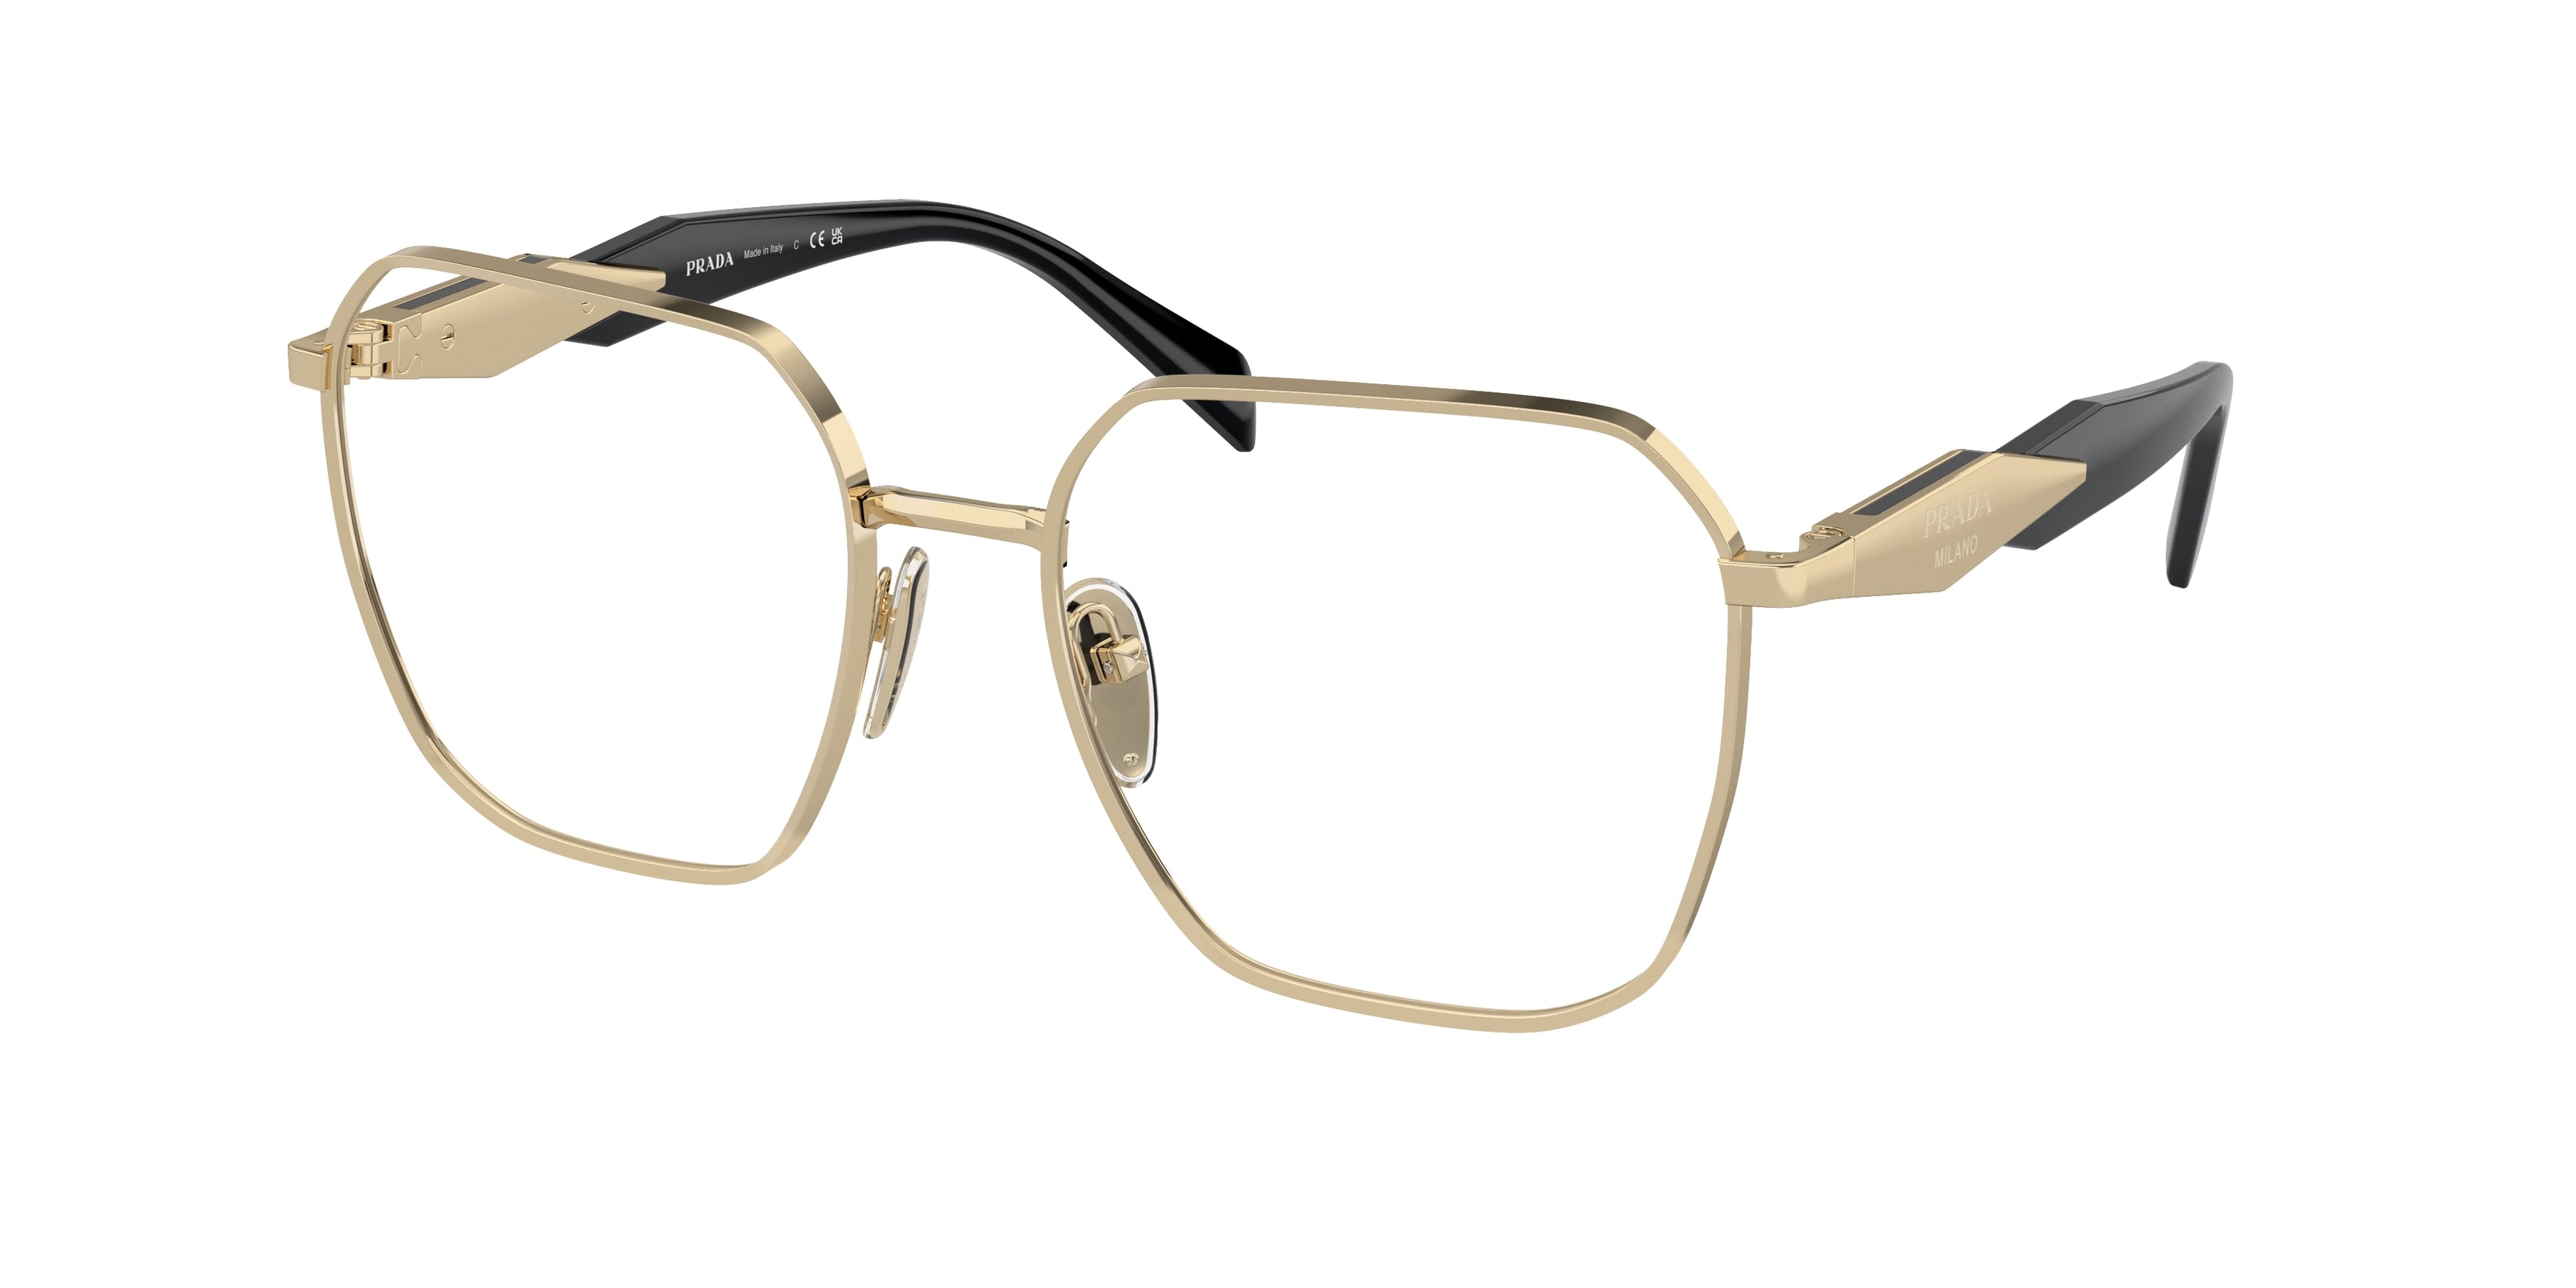 Prada PR56ZV Square Eyeglasses  ZVN1O1-Pale Gold 55-140-18 - Color Map Gold